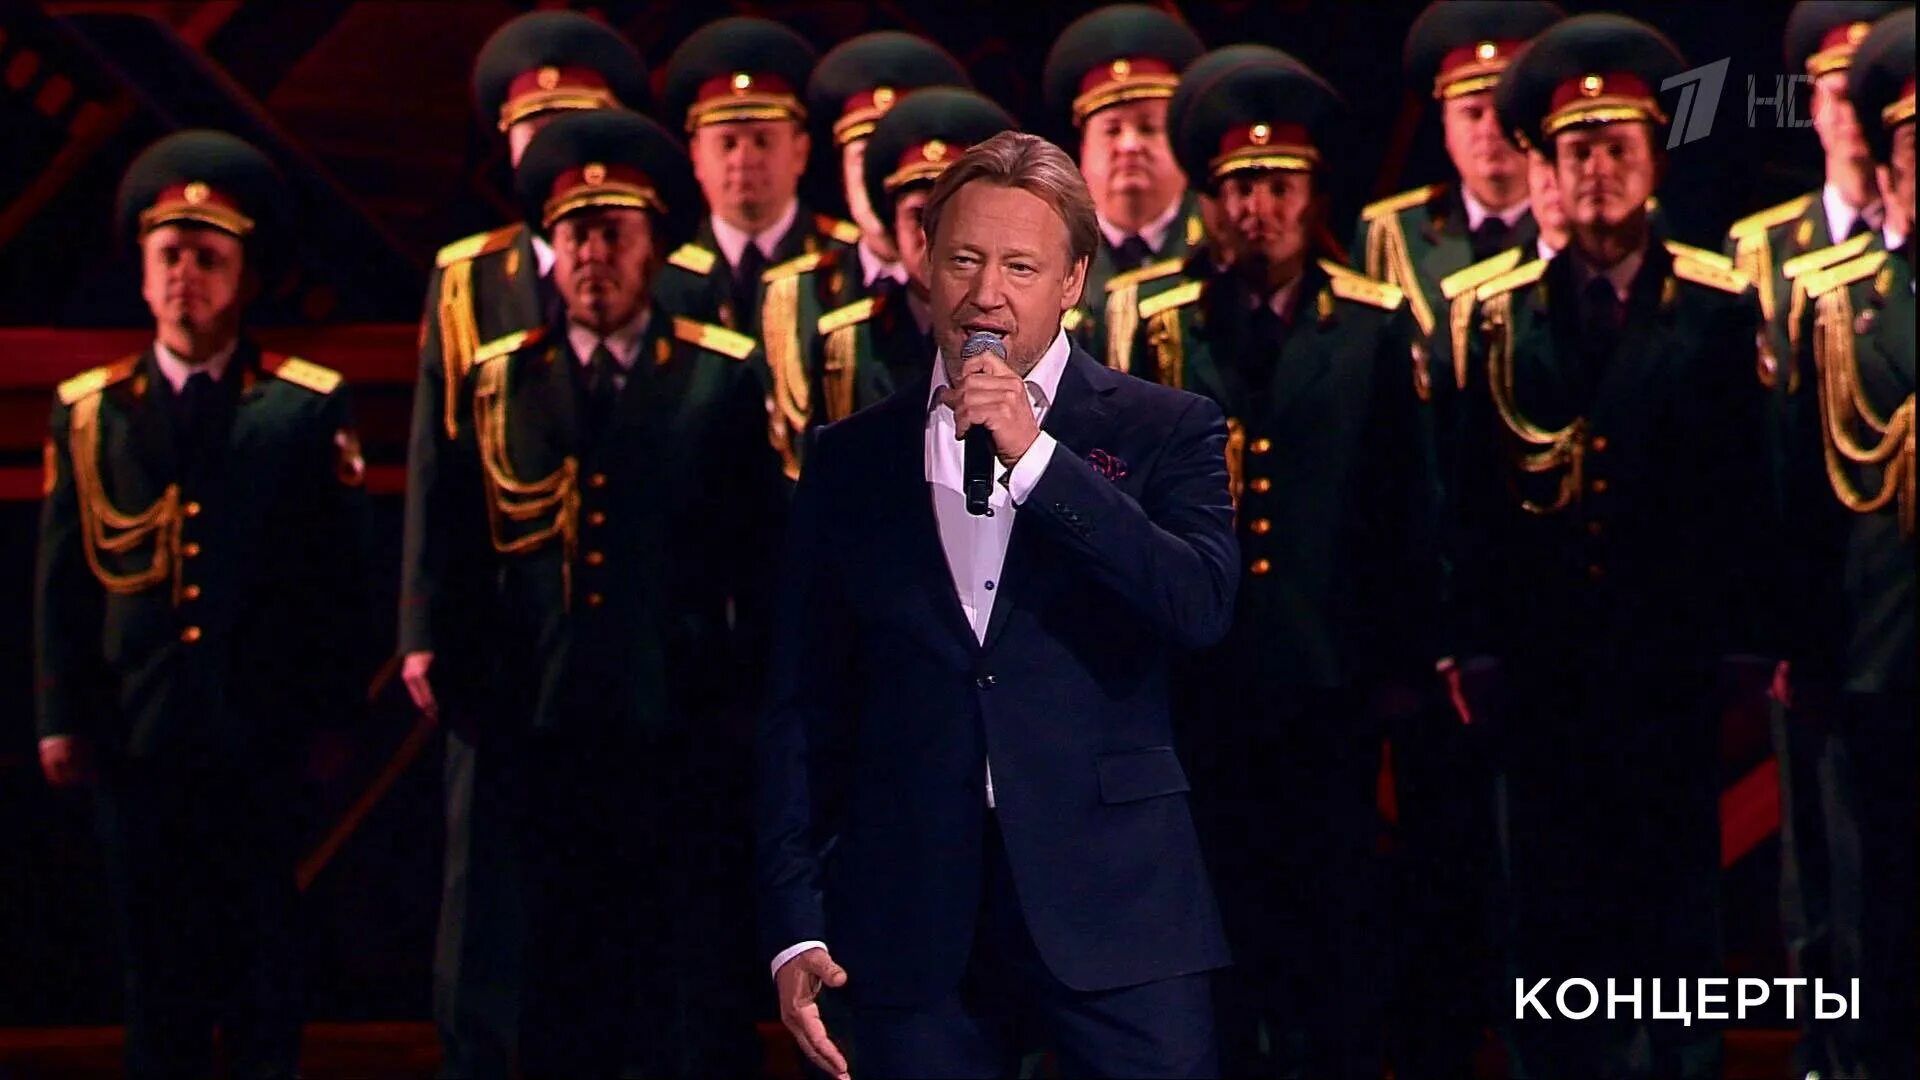 Концерт 23 февраля на канале россия 1. Концерт посвященный 23 февраля. Офицеры концерт в Кремле.